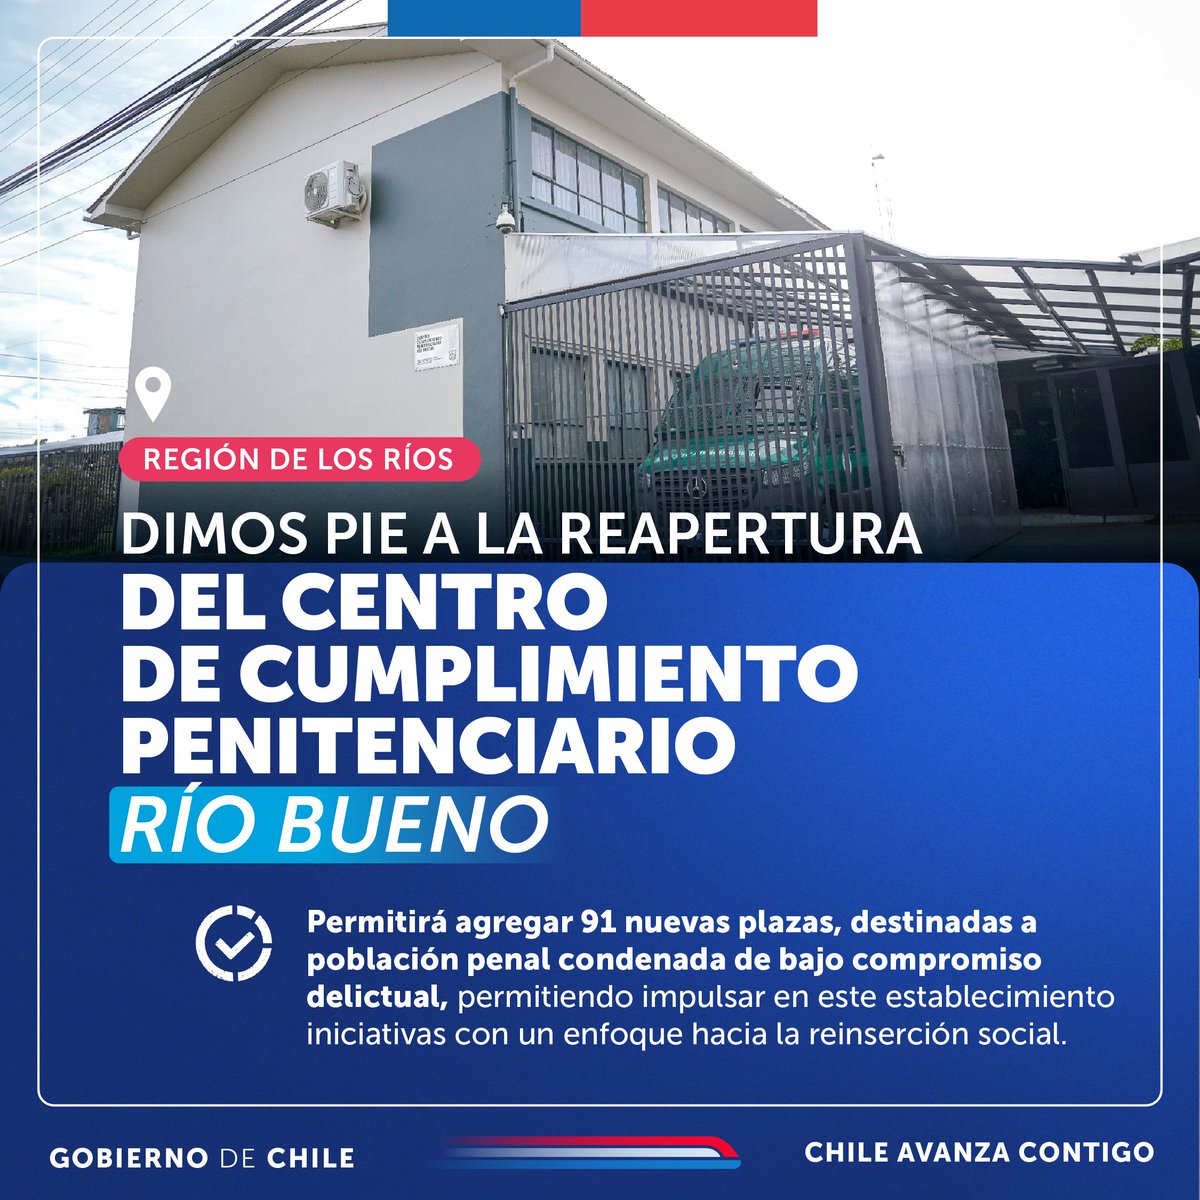 El ministro de Justicia y Derechos Humanos, @LuisCorderoVega, anunció la reapertura del Centro de Cumplimiento Penitenciario de Río Bueno. ✅ Esto significa más plazas para personas privadas de libertad, reforzamiento del sistema de seguridad, entre otras mejoras.